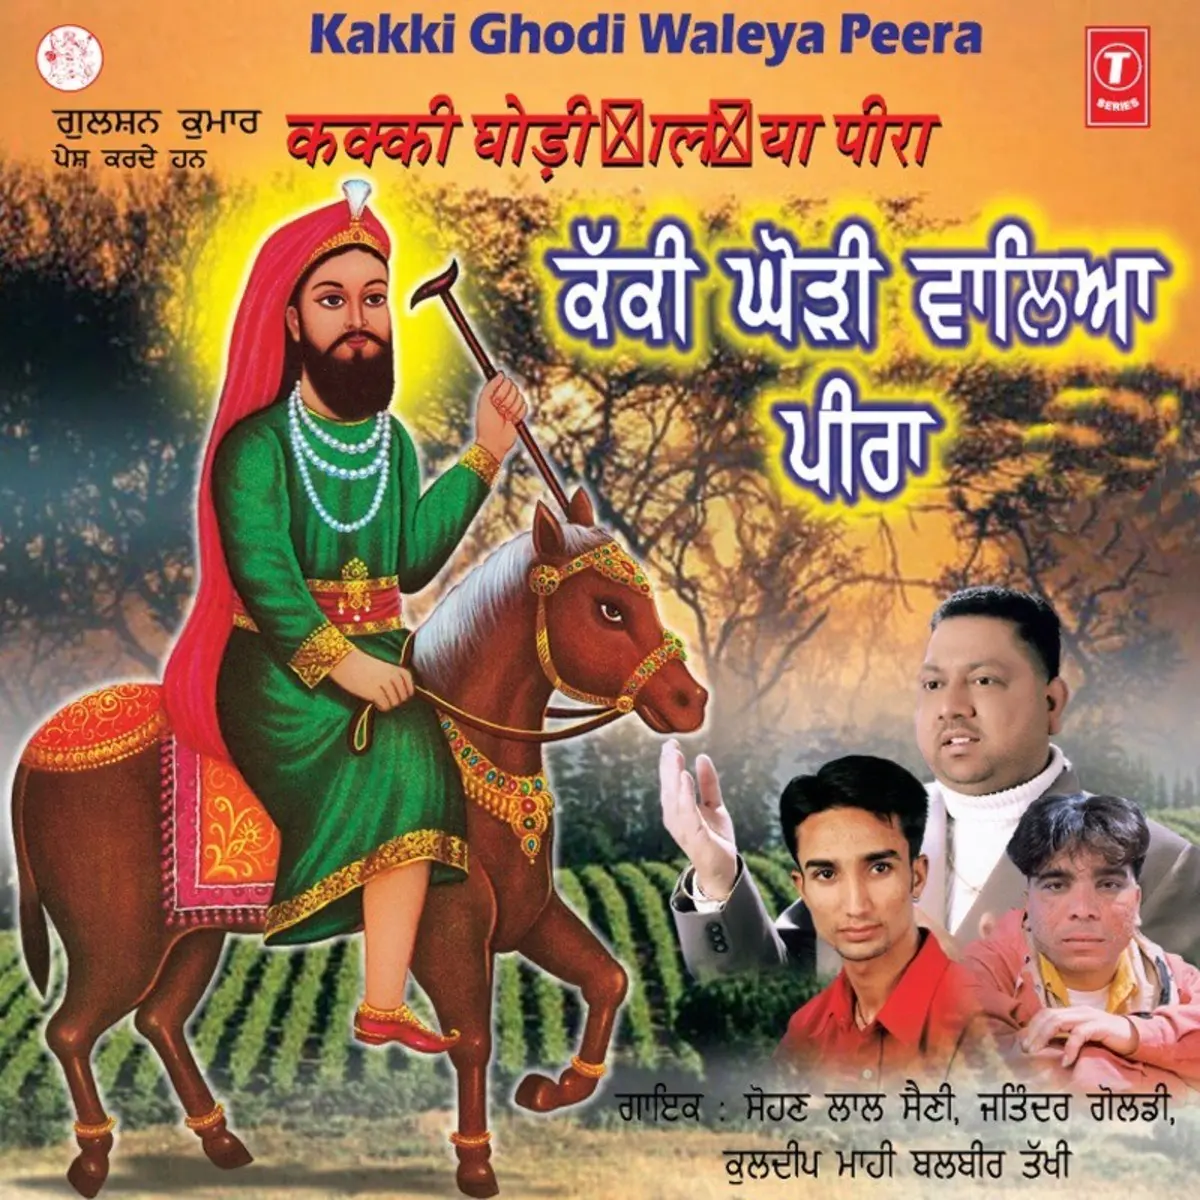 Kakki Ghodi Waleya Peera Songs Download Kakki Ghodi Waleya Peera Mp3 Punjabi Songs Online Free On Gaana Com Ghodi viah de geet punjabi wedding songs chitra bakshi punjab 5. gaana